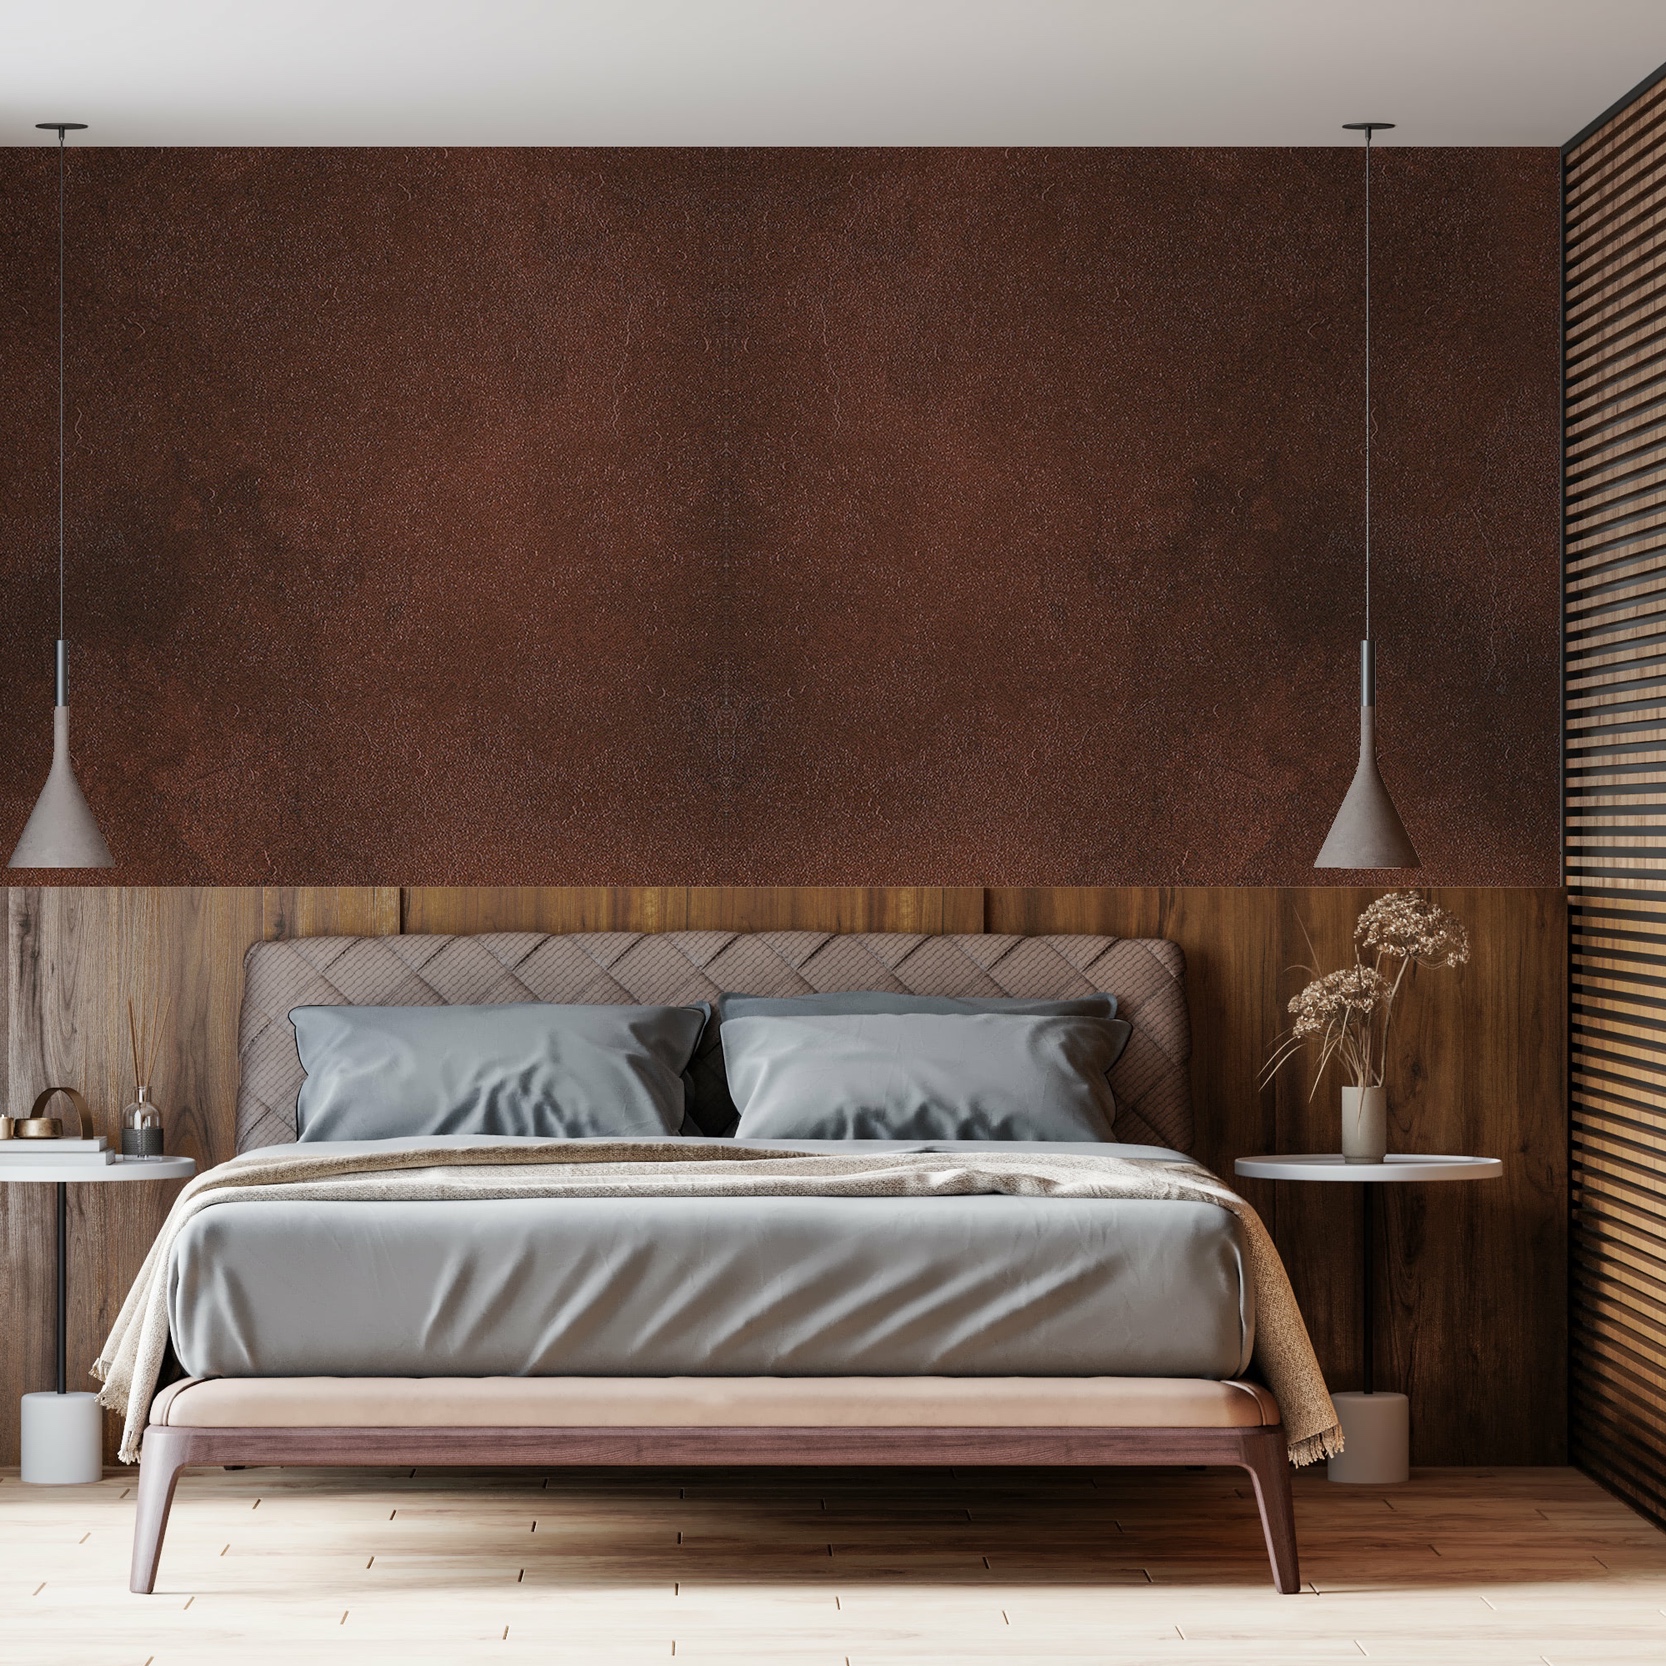 revetement-adhesif-decoratif-chambre-mur-meuble-metalisé-cuivre-cuivré-rouge-terracota-inox-alumumium